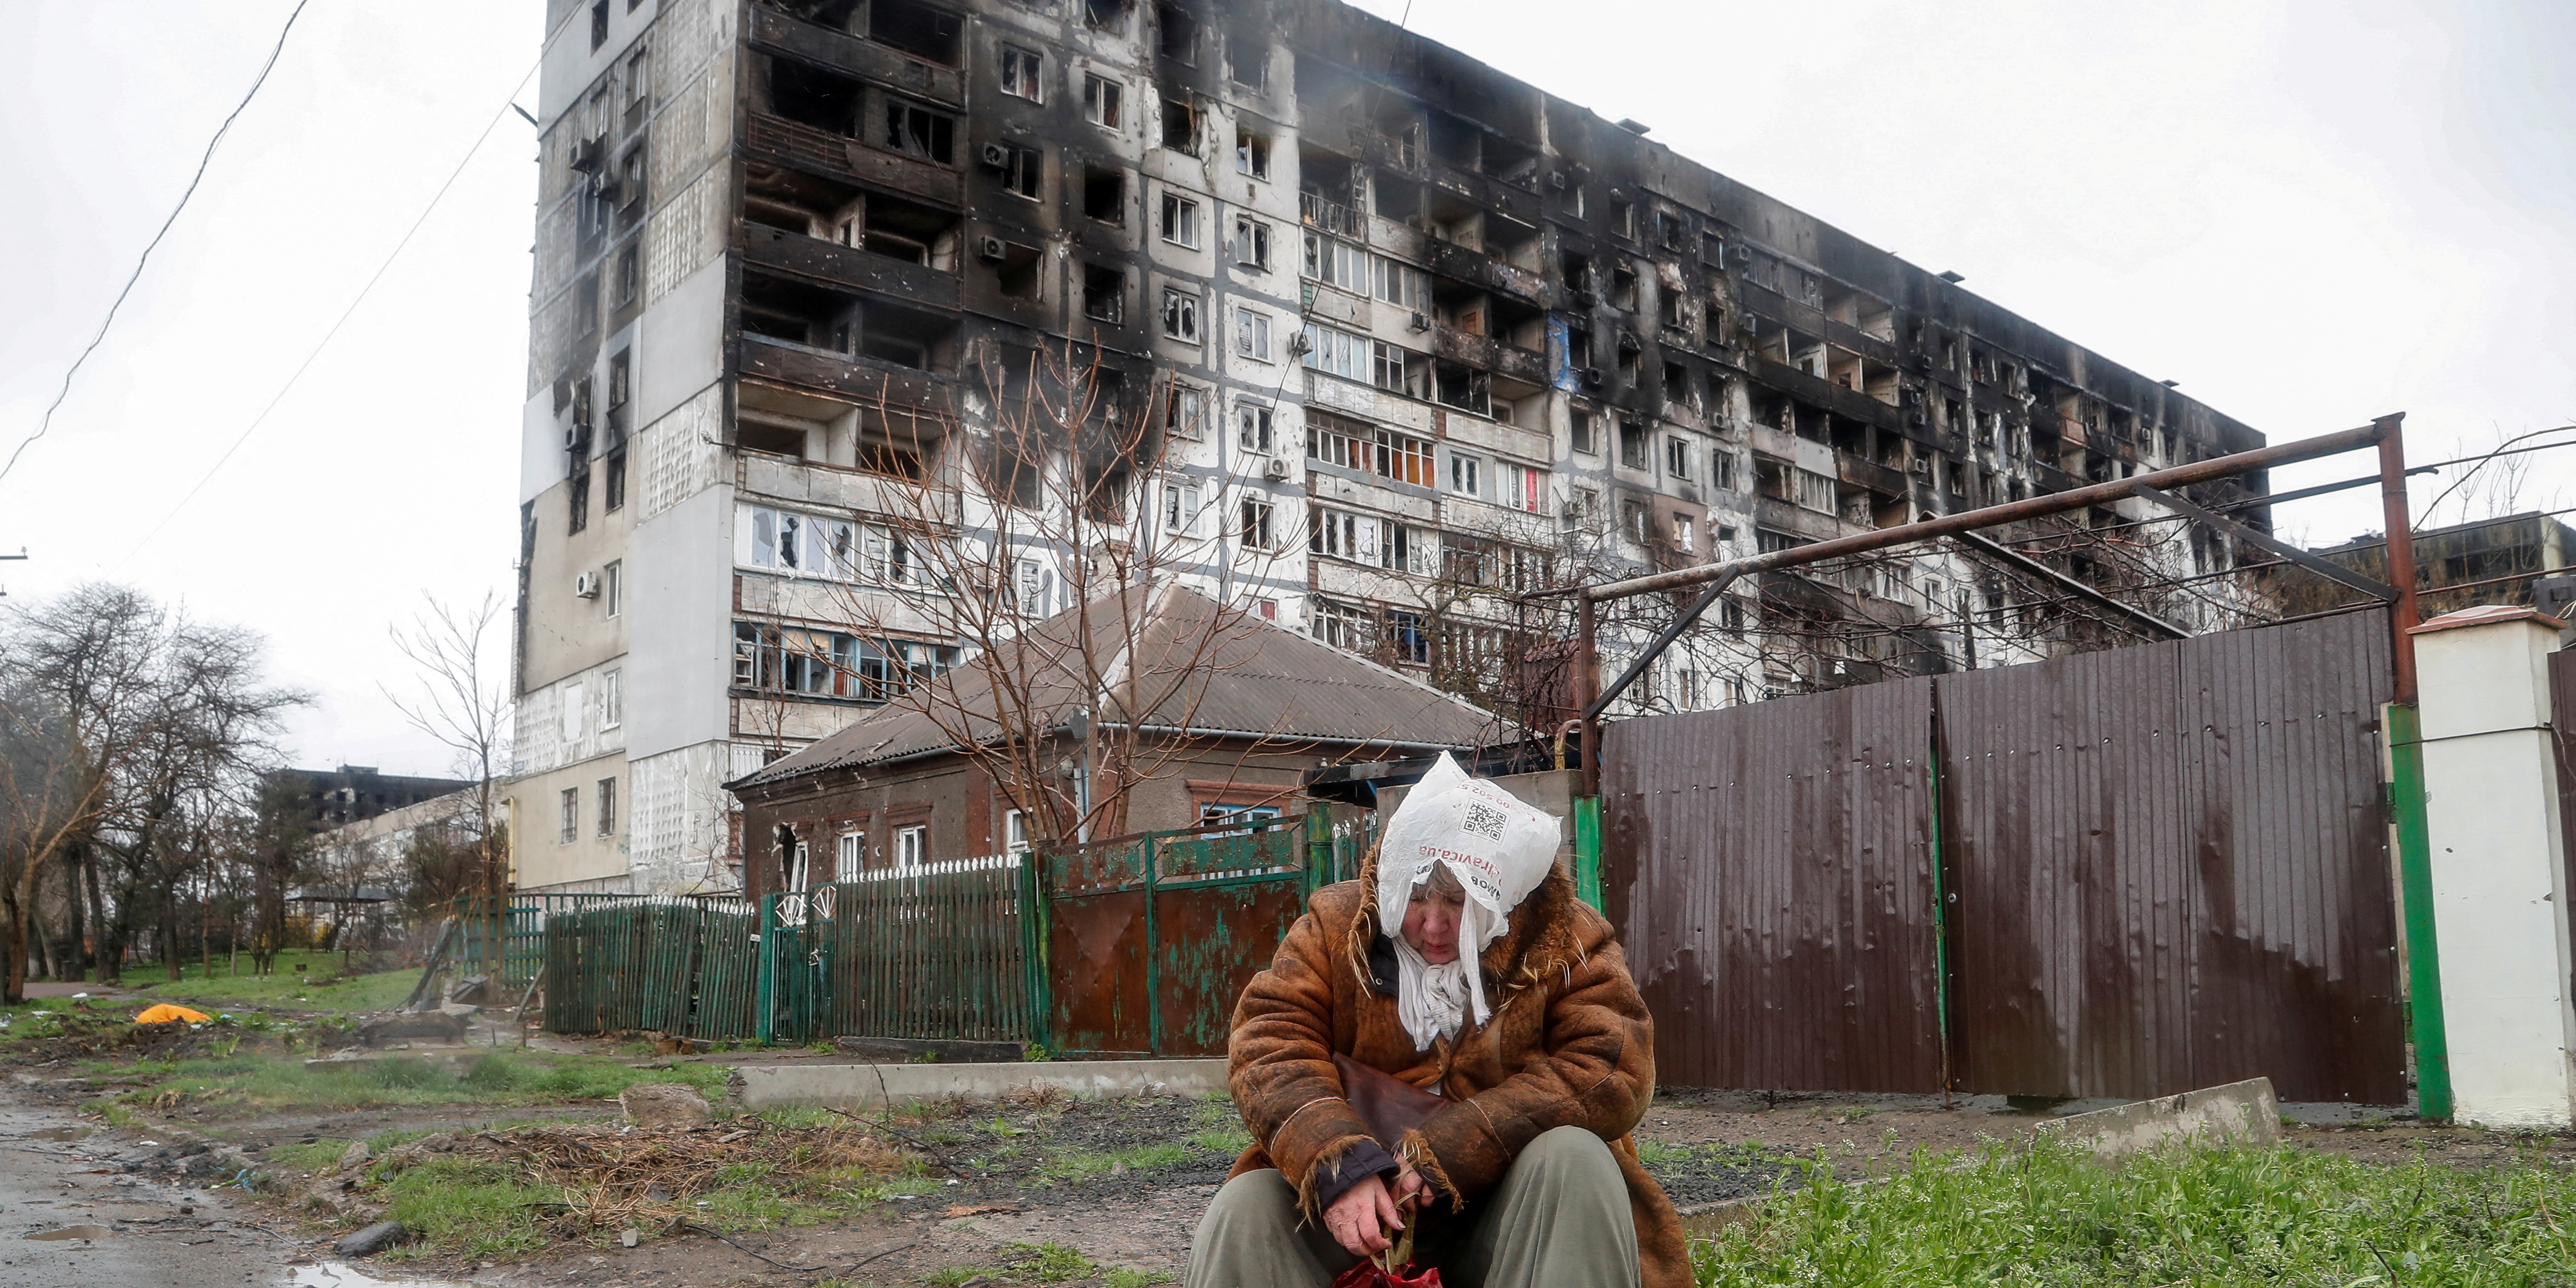 Soutien à l'Ukraine : les députés européens débloquent 50 milliards d'euros pour la reconstruction